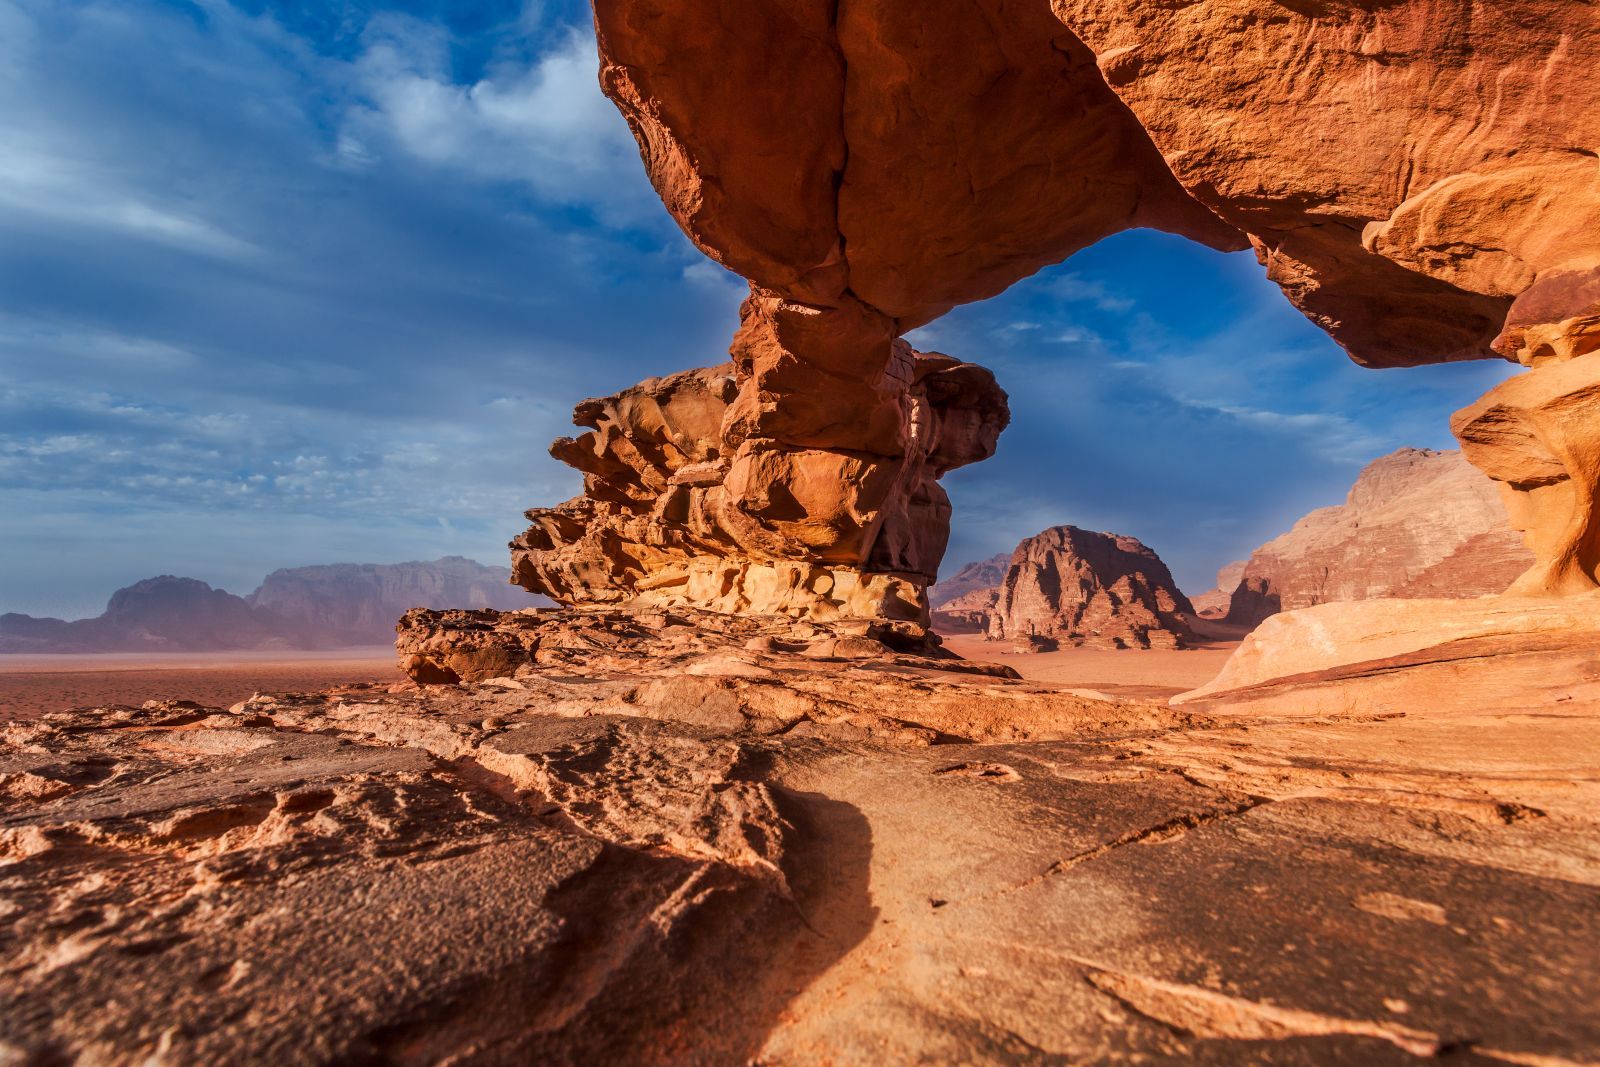 Rock arch at Wadi Rum, Jordan